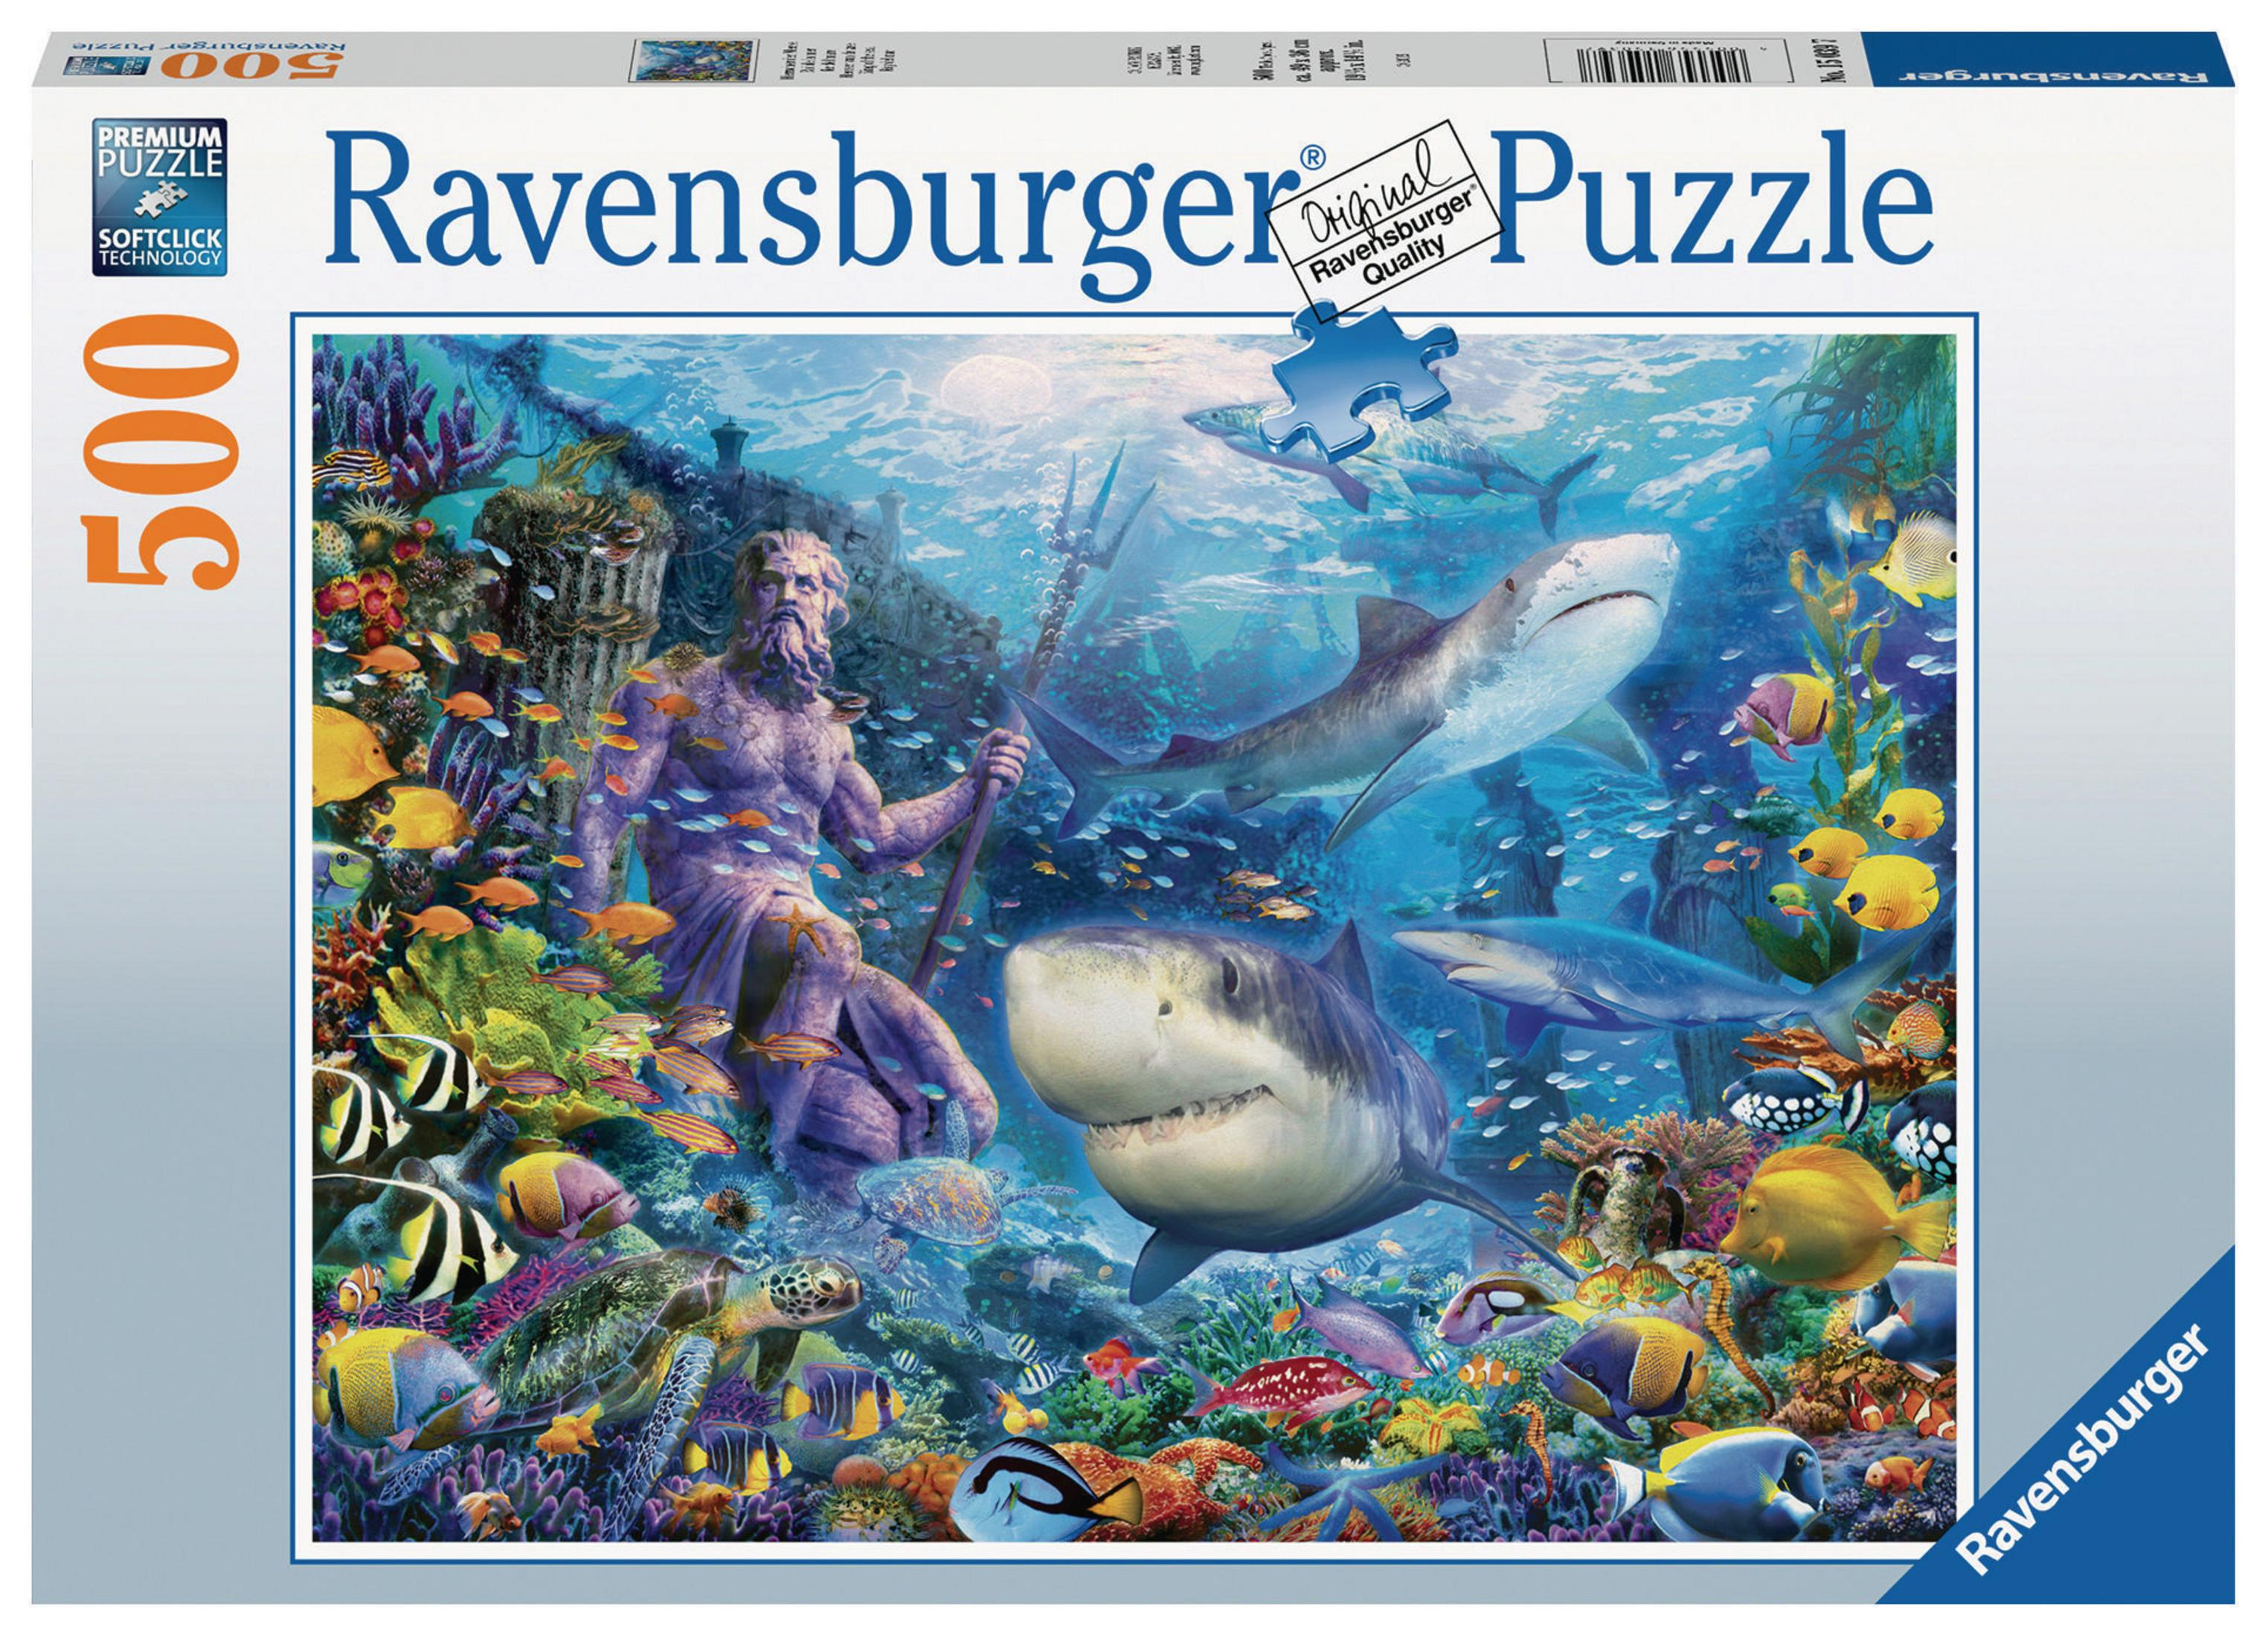 MEERE Puzzle DER 15039 RAVENSBURGER HERRSCHER